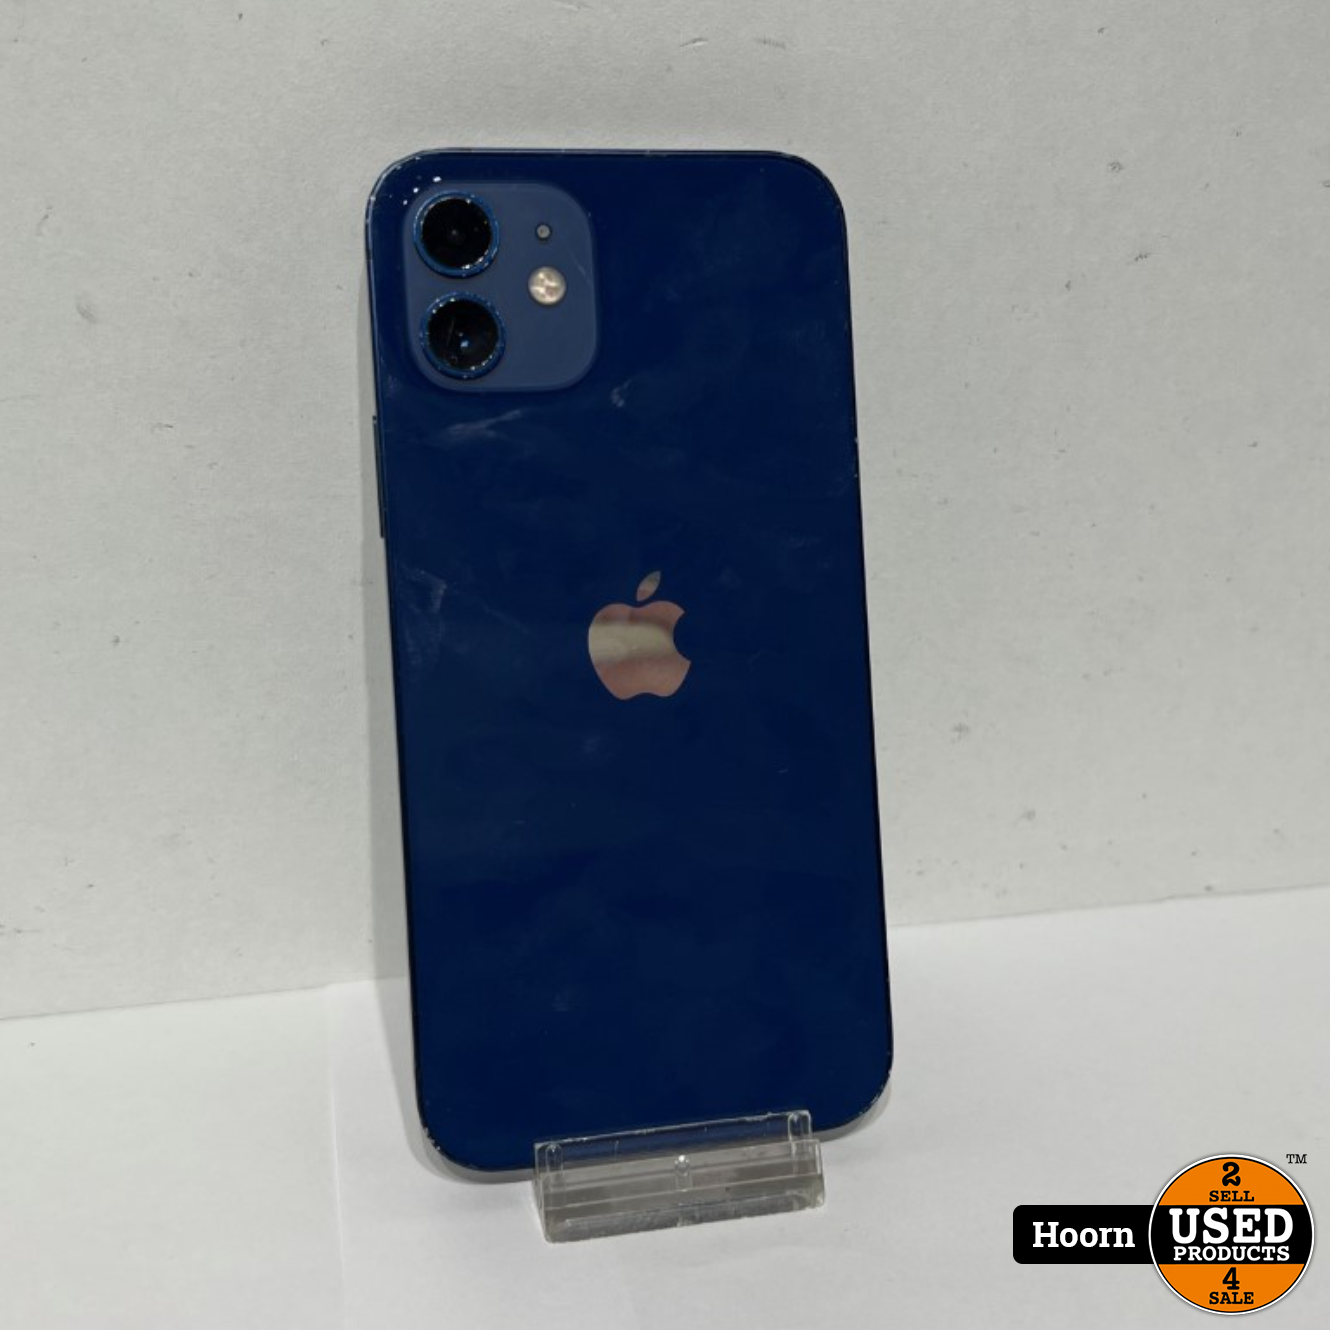 cliënt geestelijke koppeling Apple iPhone iPhone 12 256GB Blue Los Toestel incl. Lader Accu: 89% - Used  Products Hoorn